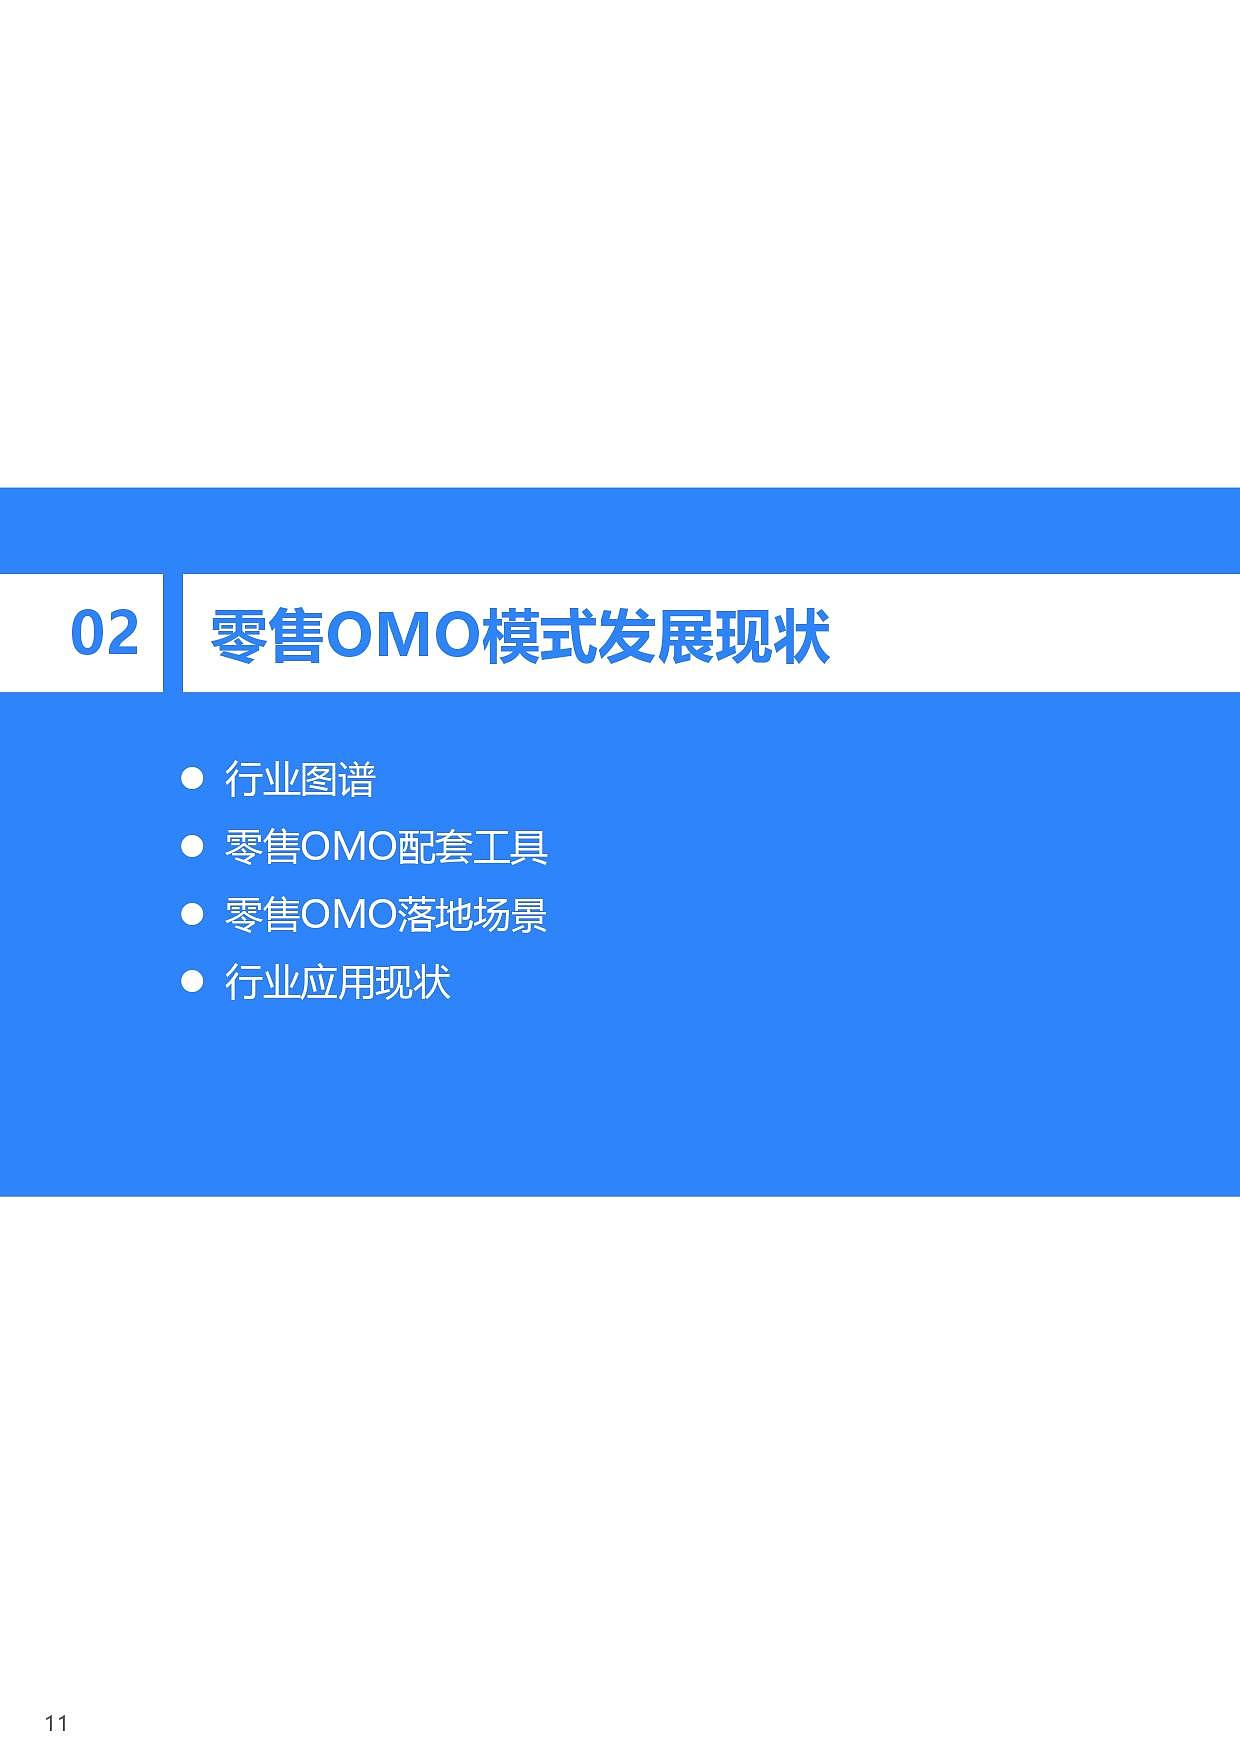 36氪研究院 | 2021年中国零售OMO研究报告 - 12